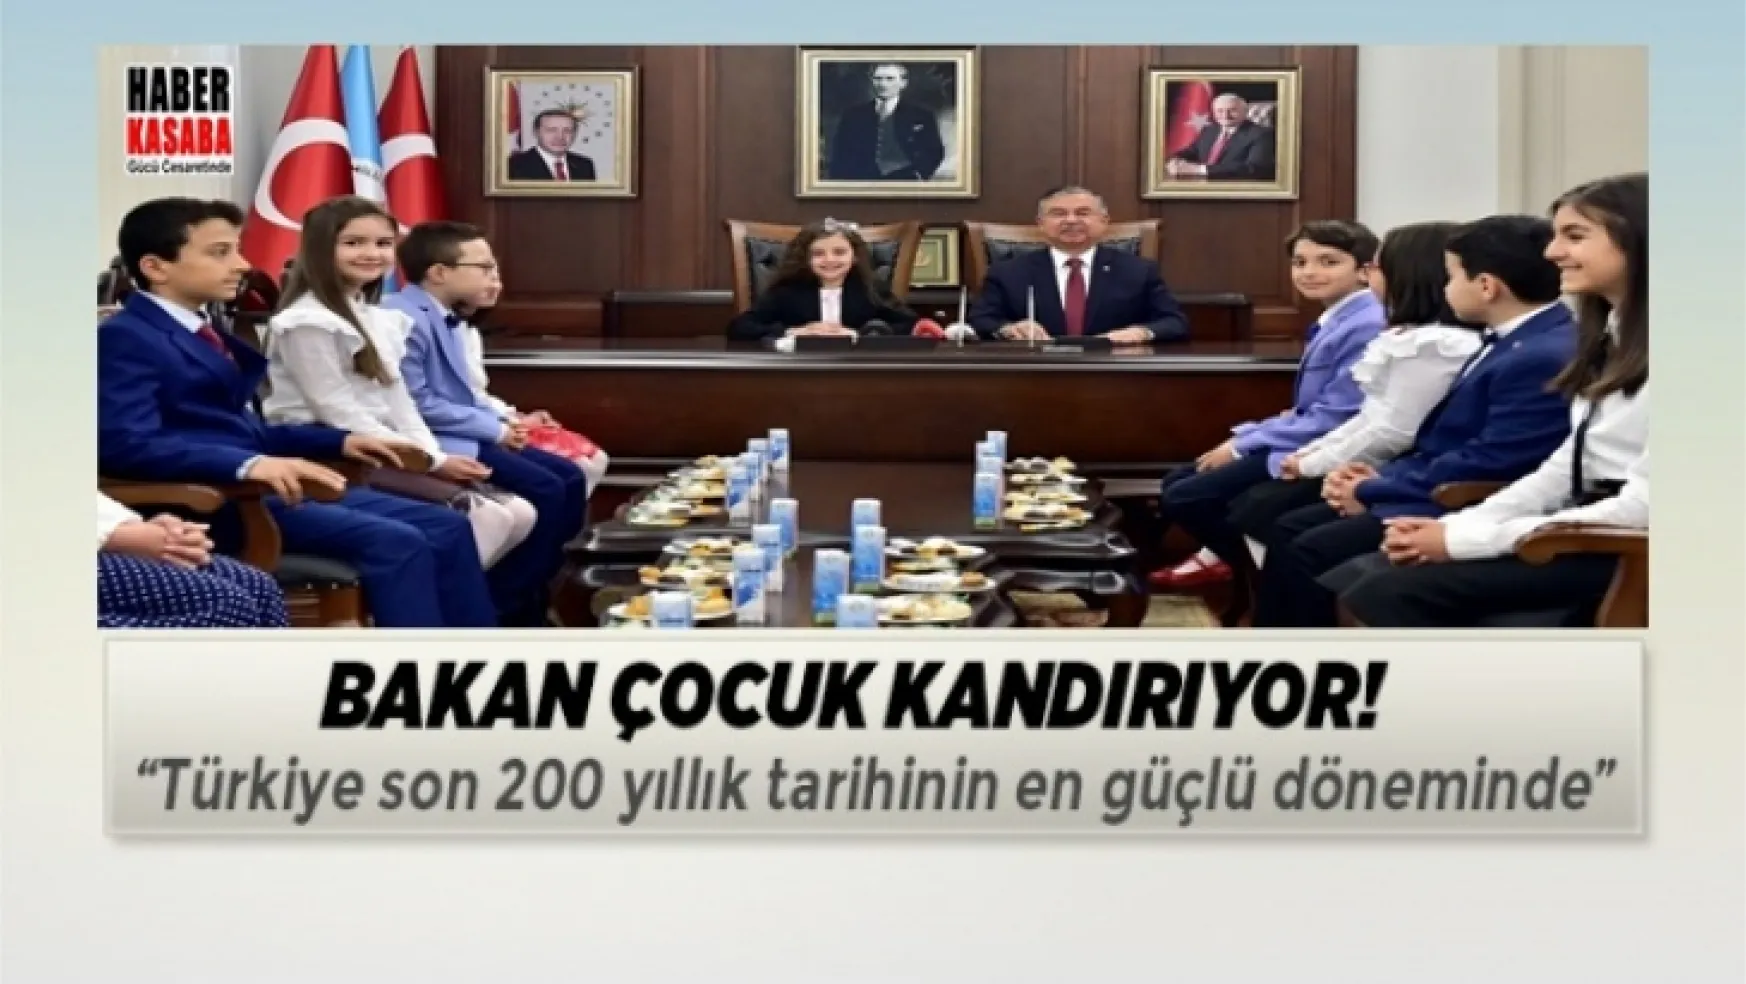 Bakan Yılmaz çocuk kandırıyor! 'Türkiye son 200 yıllık tarihinin en güçlü döneminde'